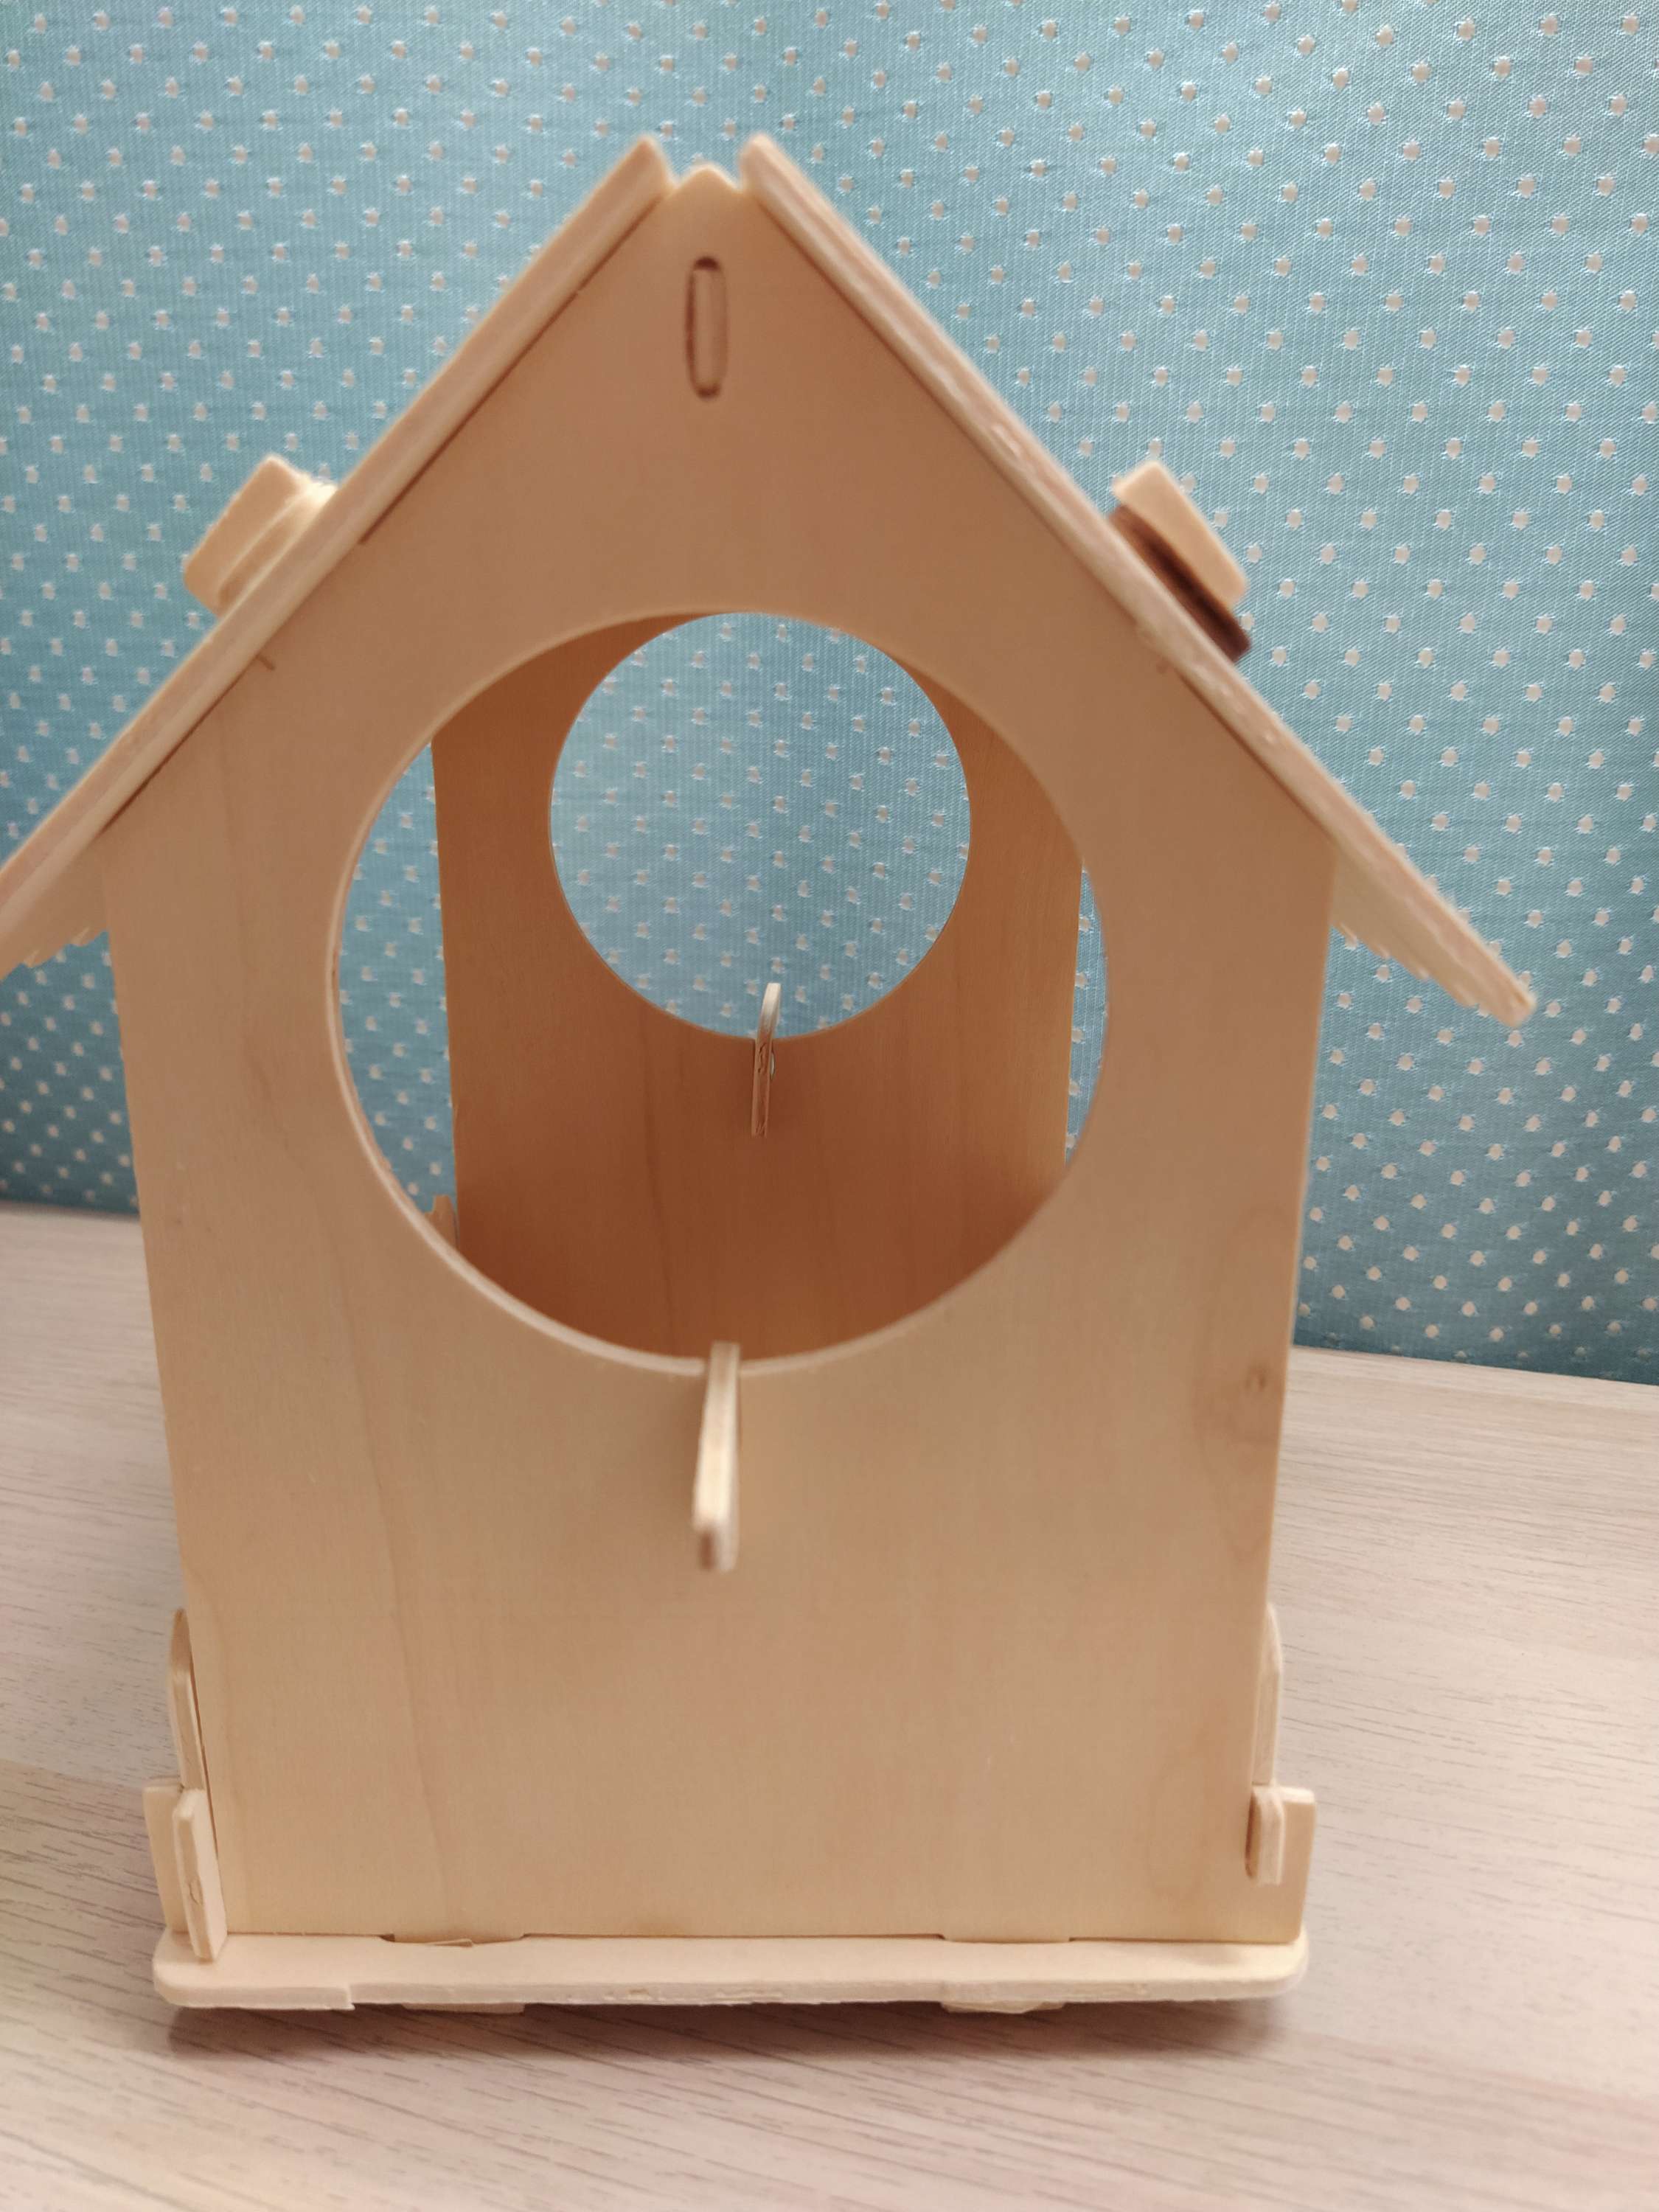 Сборная деревянная модель « для птиц» (4018701) - Купить по .